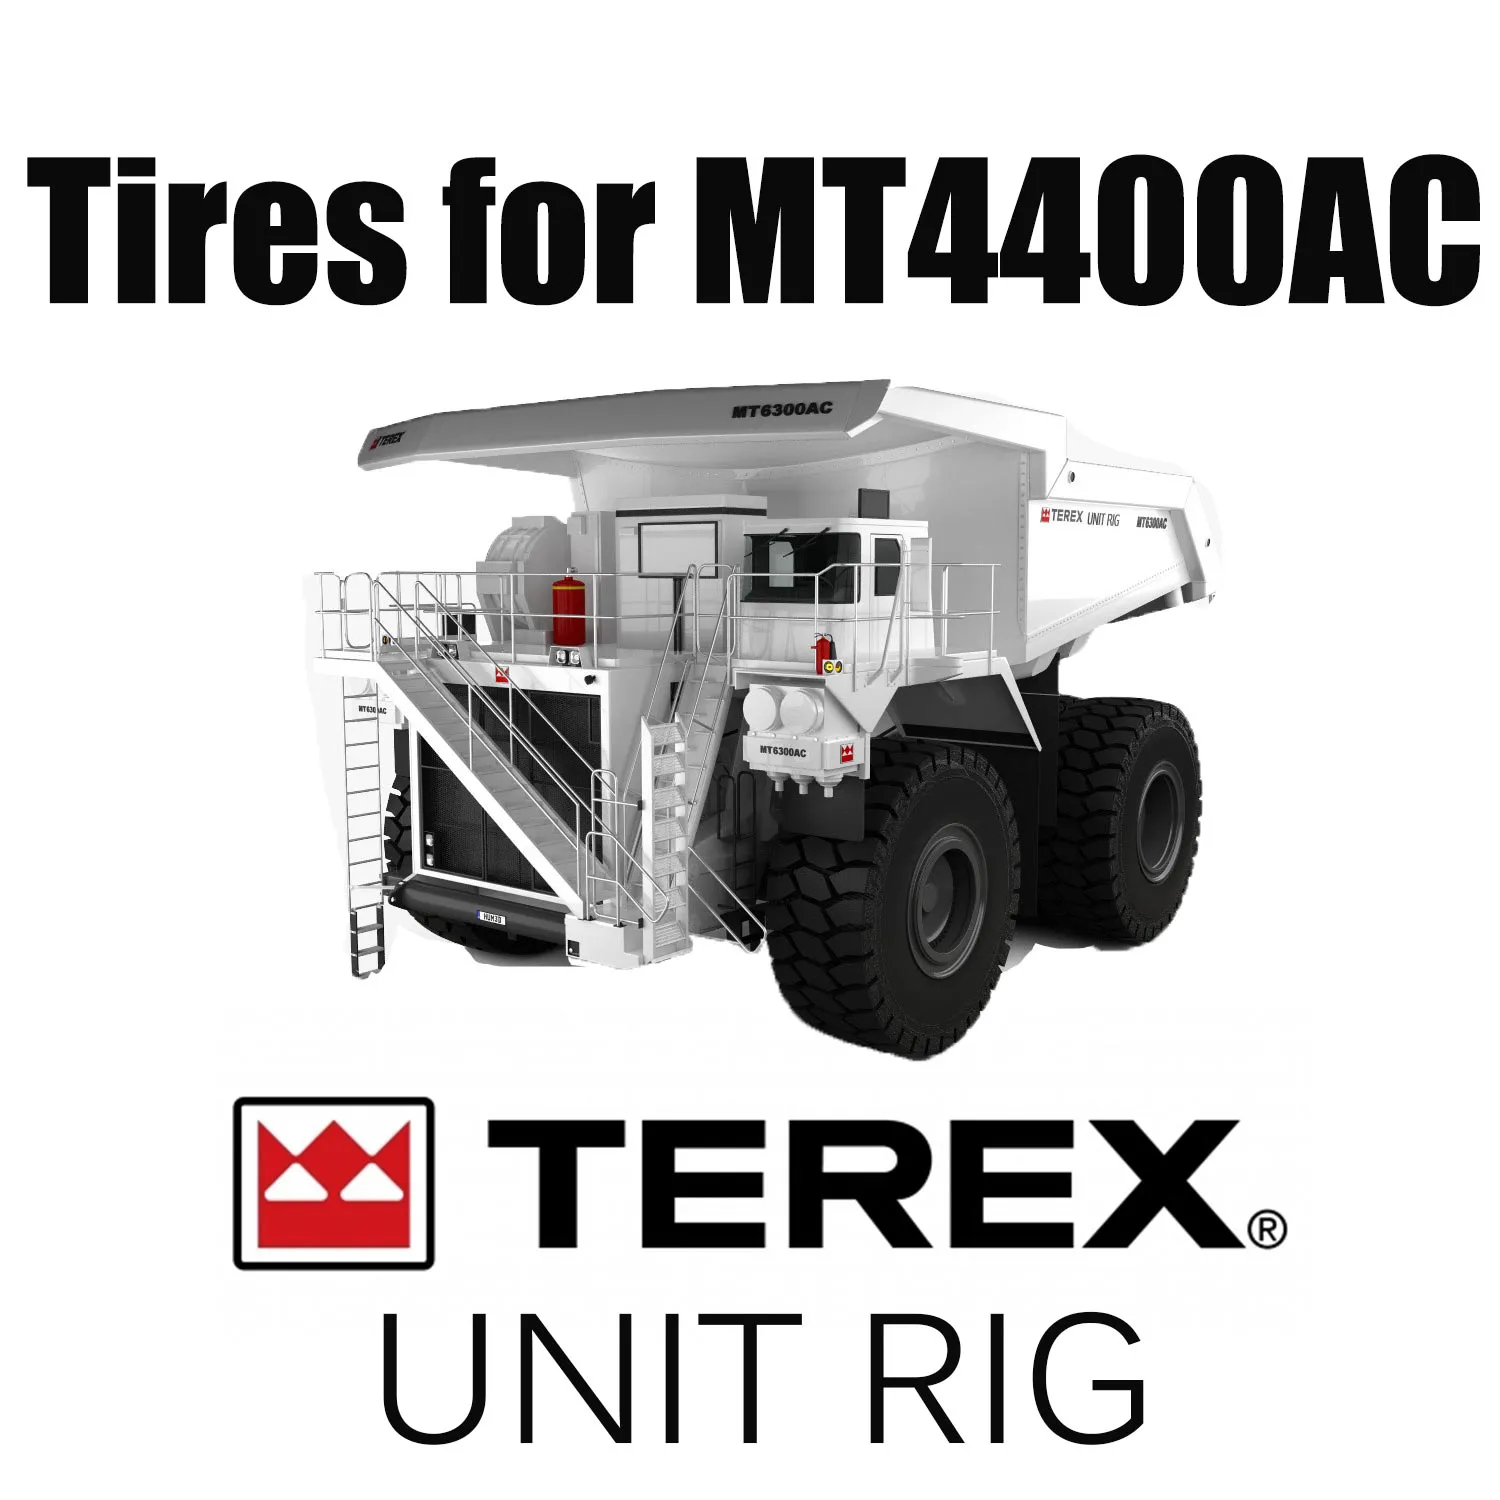 Chiều sâu 46 / 90R57 Đặc biệt dành cho lốp đường áp dụng cho UNIT RIG MT4400AC